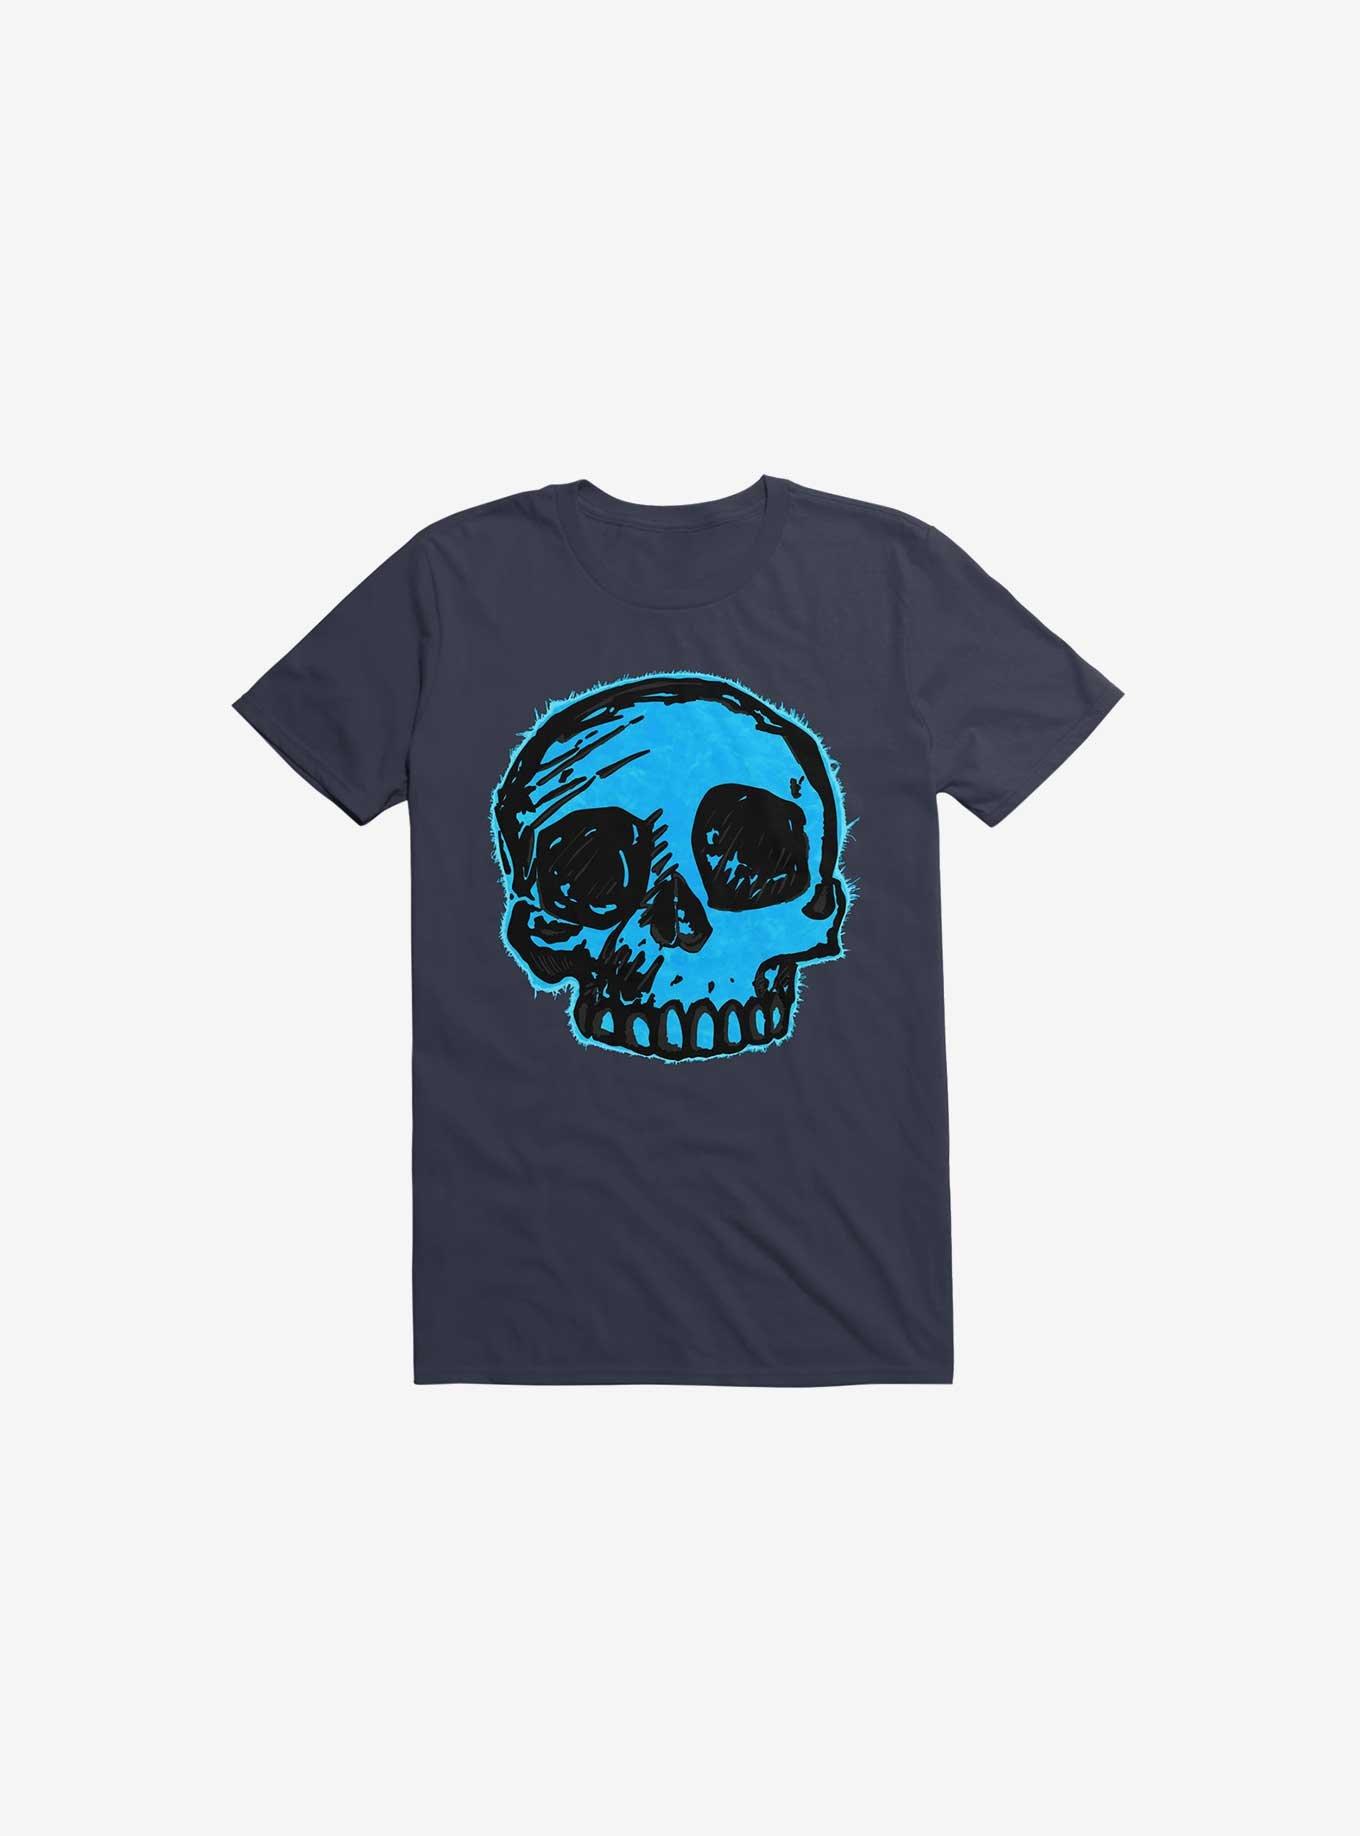 Blue Skull Navy Blue T-Shirt, , hi-res